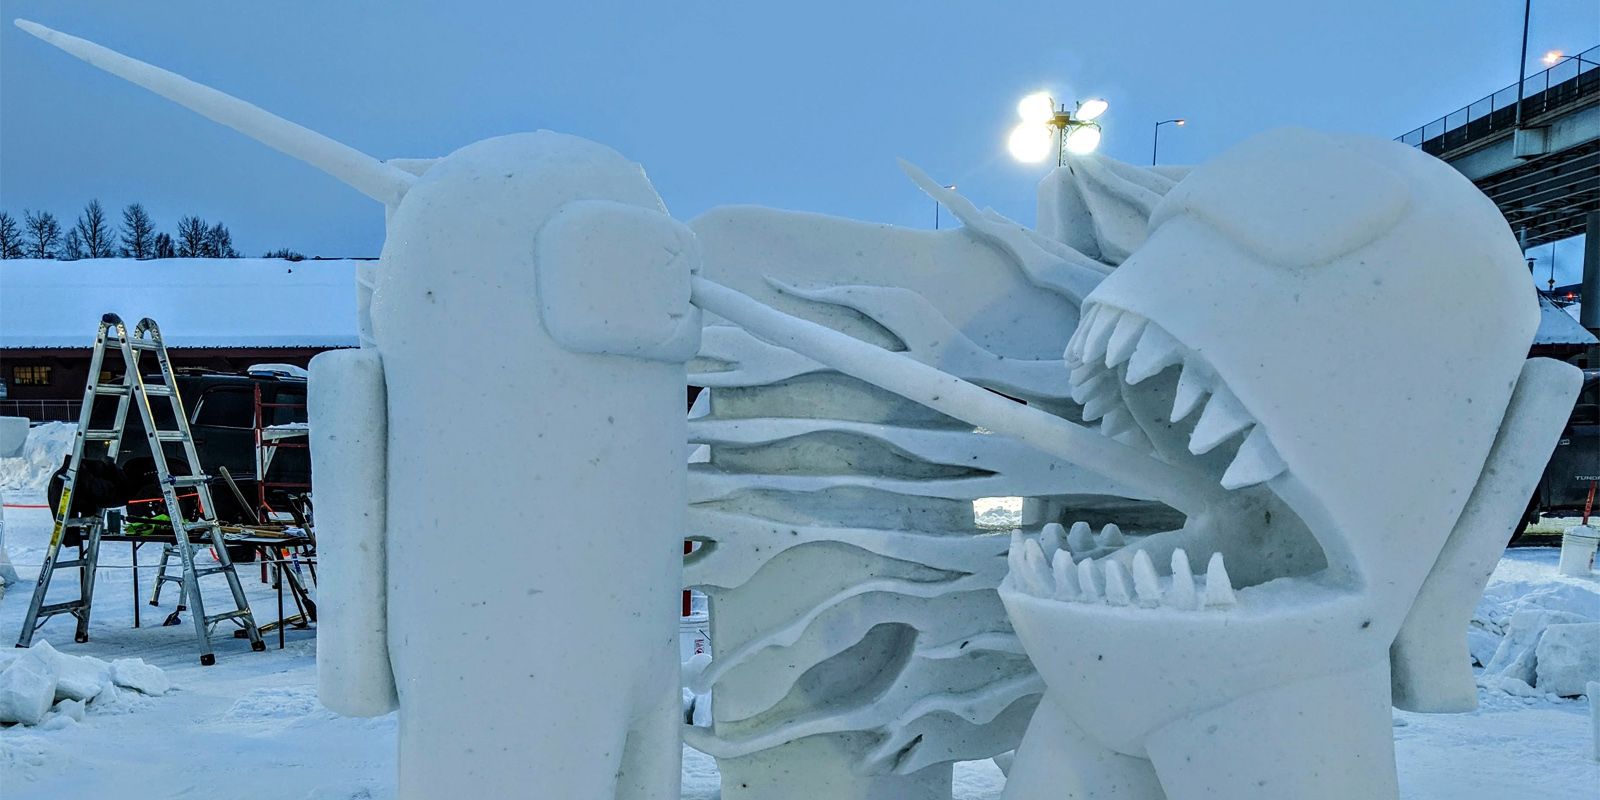 Entre nosotros, las muertes de impostores cobran vida gracias a increíbles esculturas de nieve